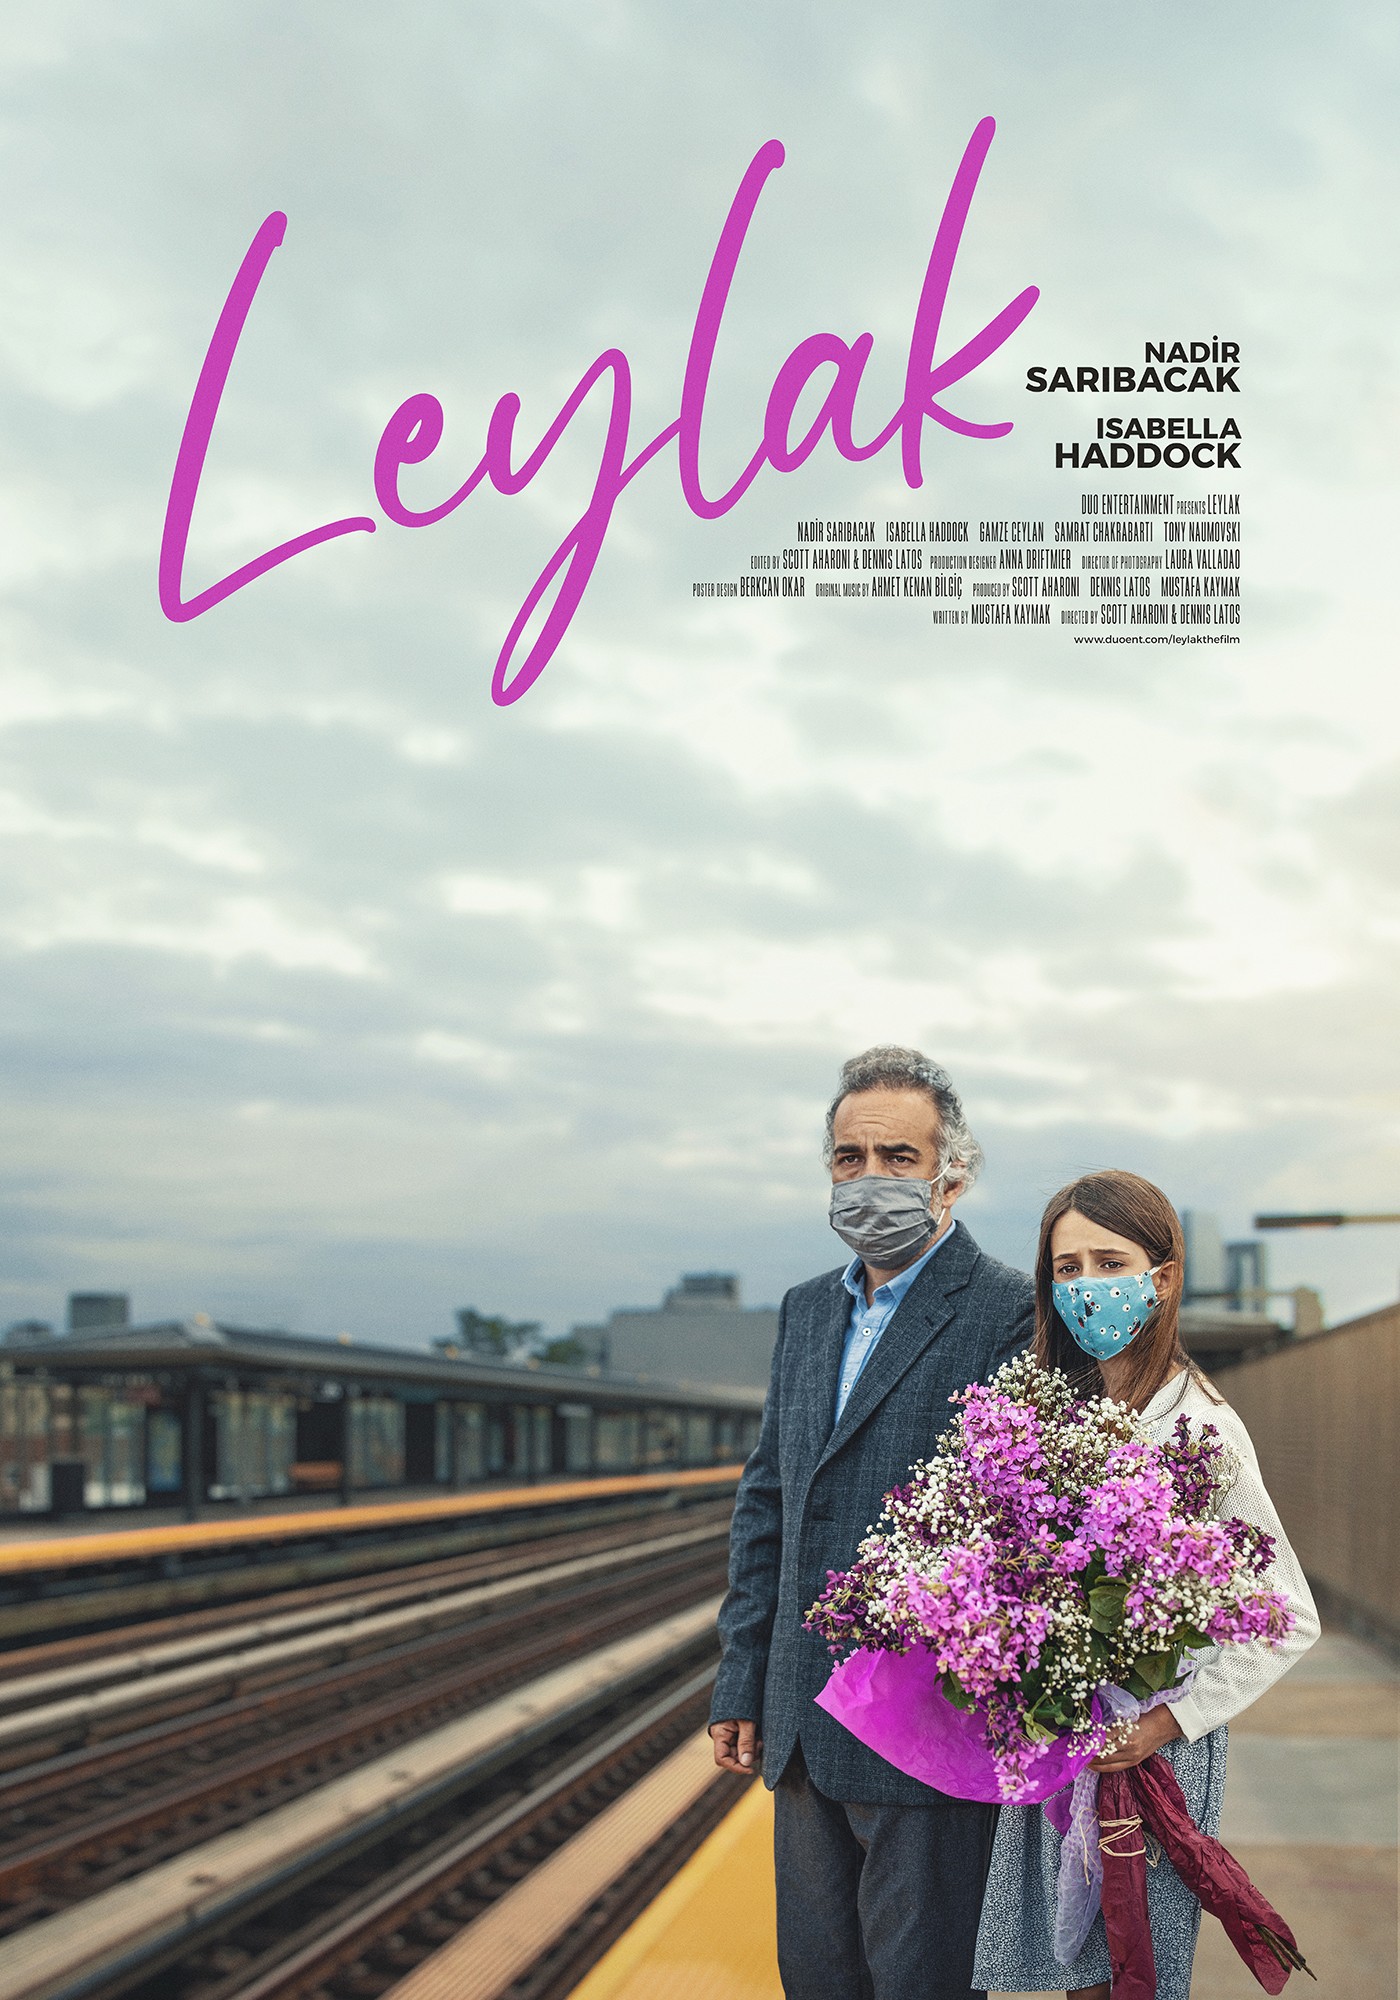 Mega Sized Movie Poster Image for Leylak